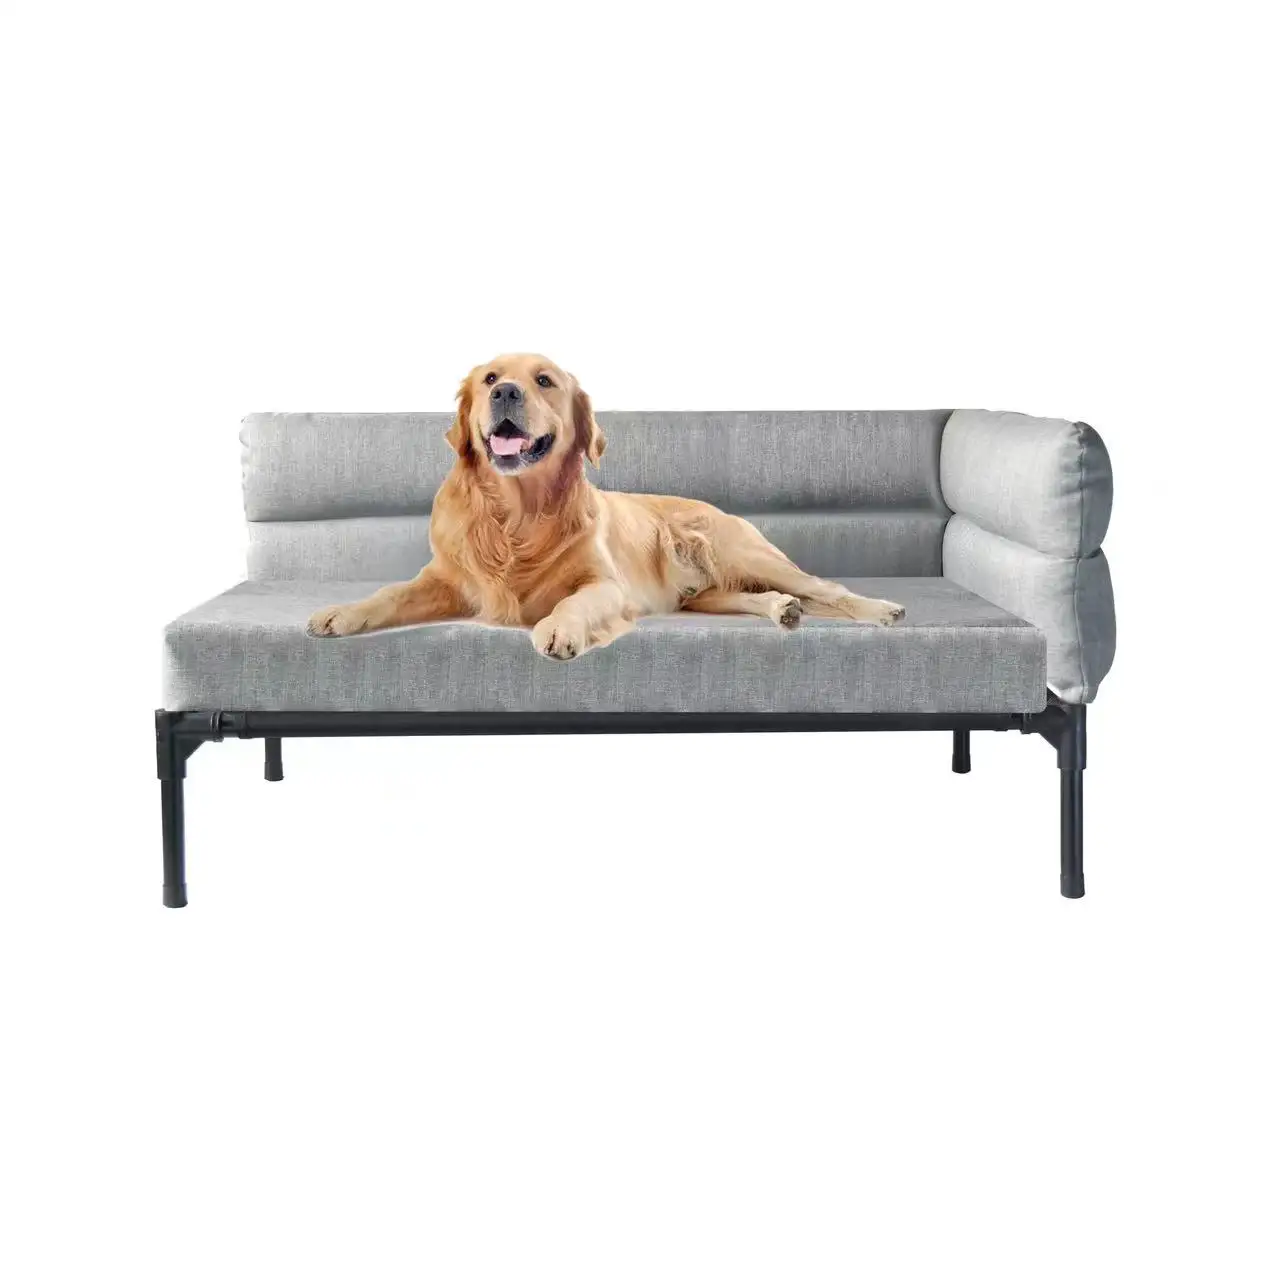 Color personalizado a prueba de aceite Anti incrustante de lujo antideslizante cama para mascotas Marco de hierro resistente elevado perro sofá cama